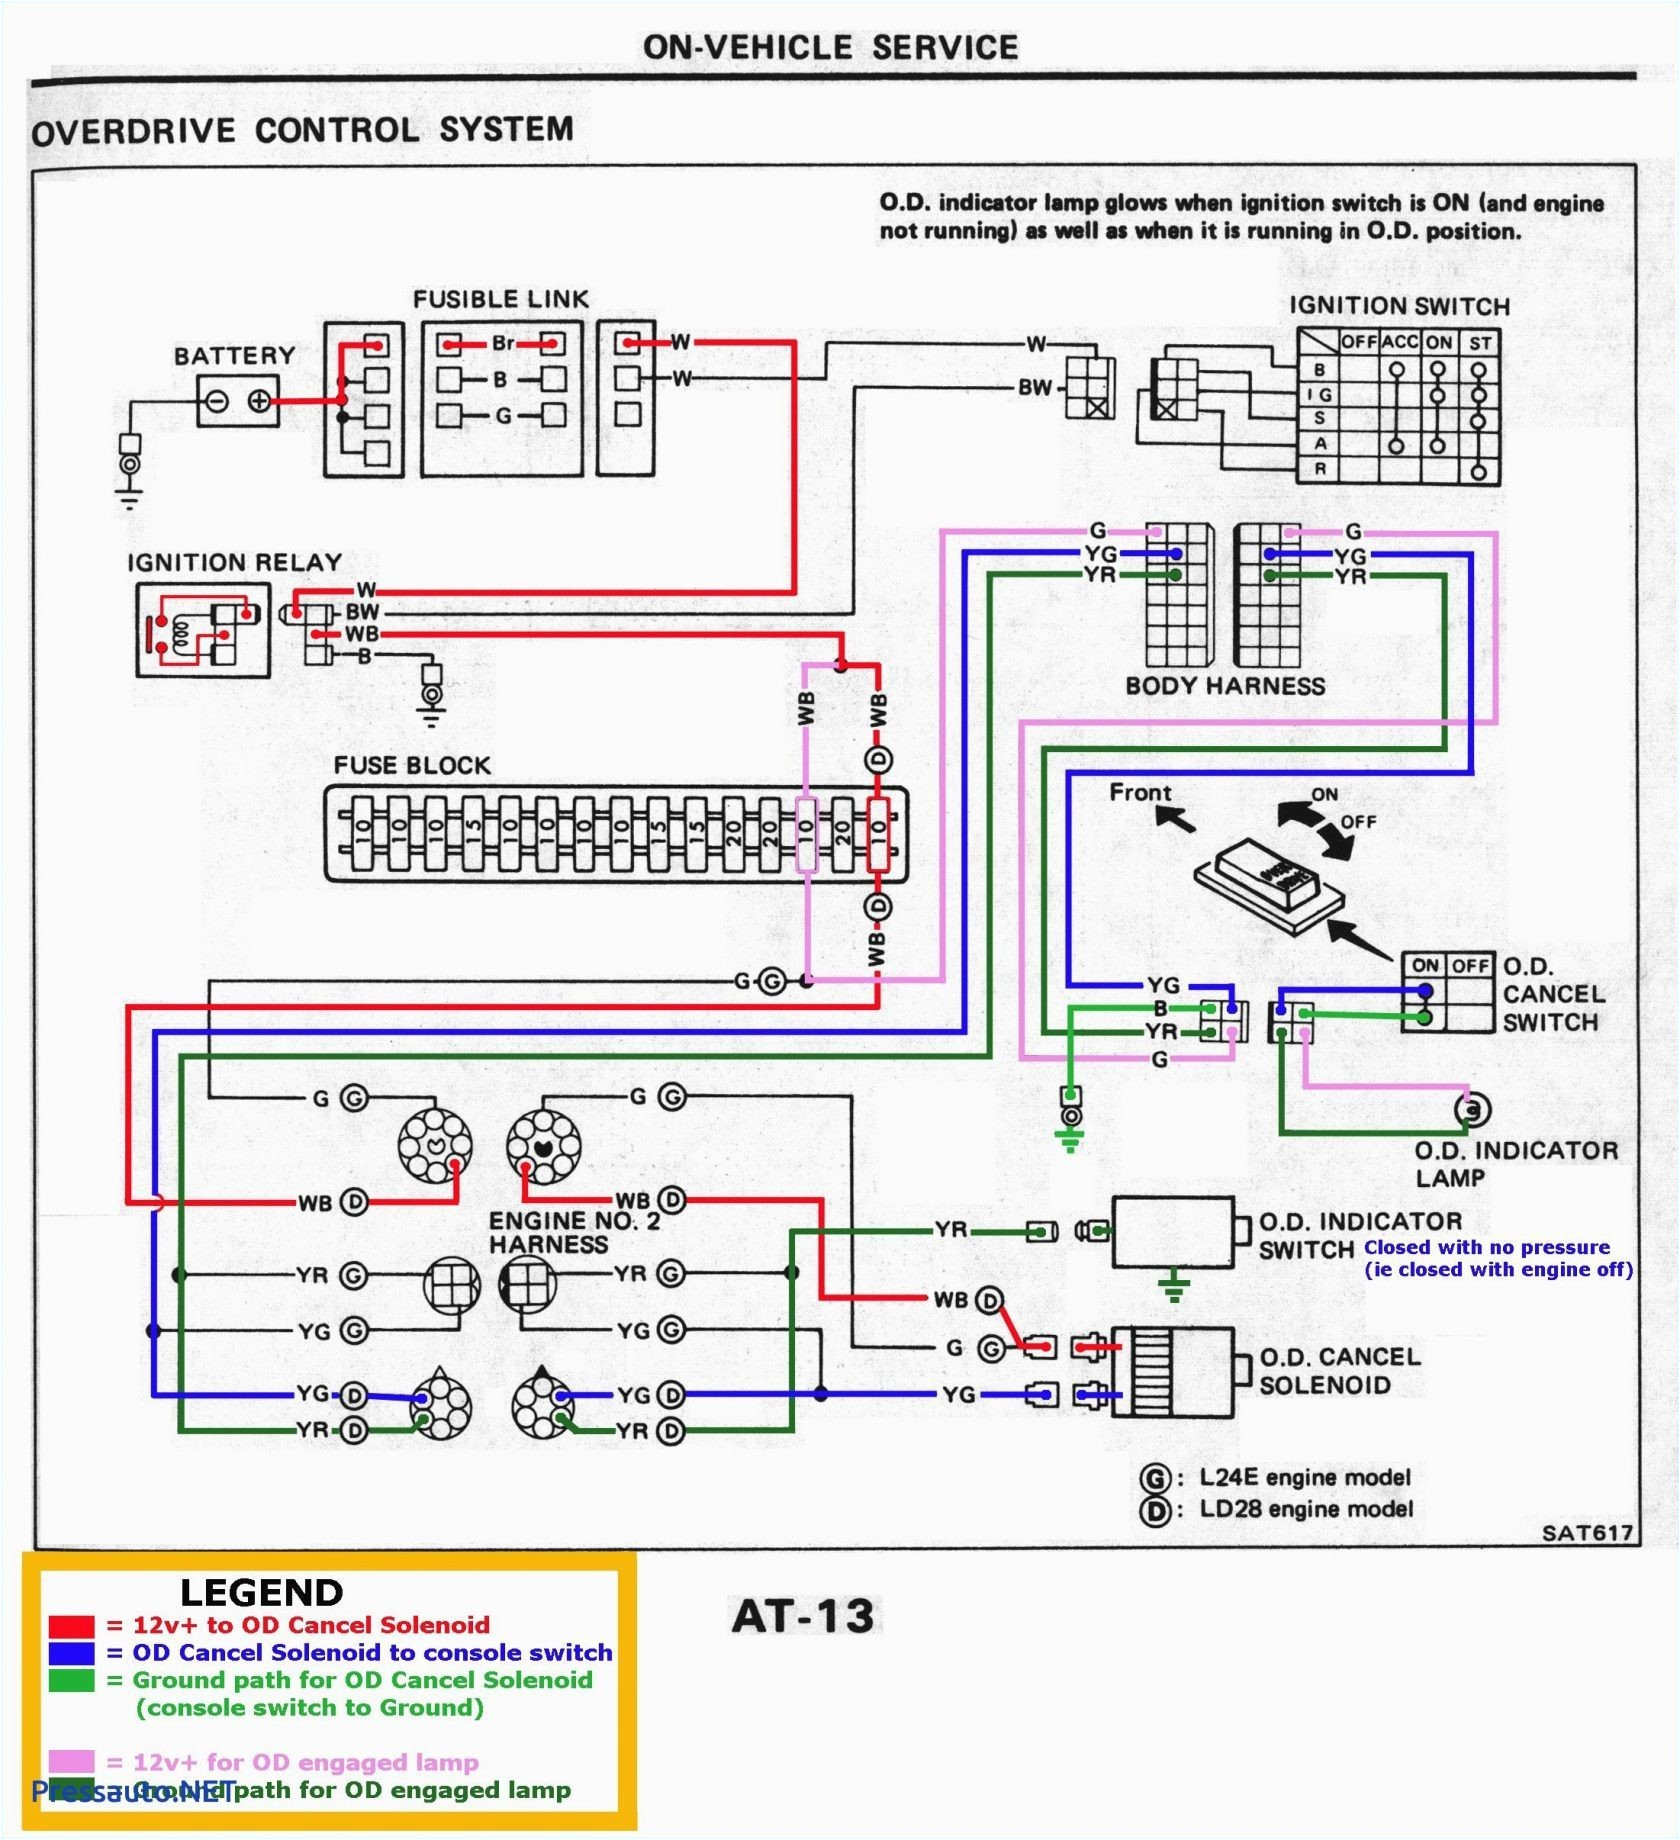 wiring atlas ho yard track wiring diagrams global atlas track wiring wiring diagram blog wiring atlas